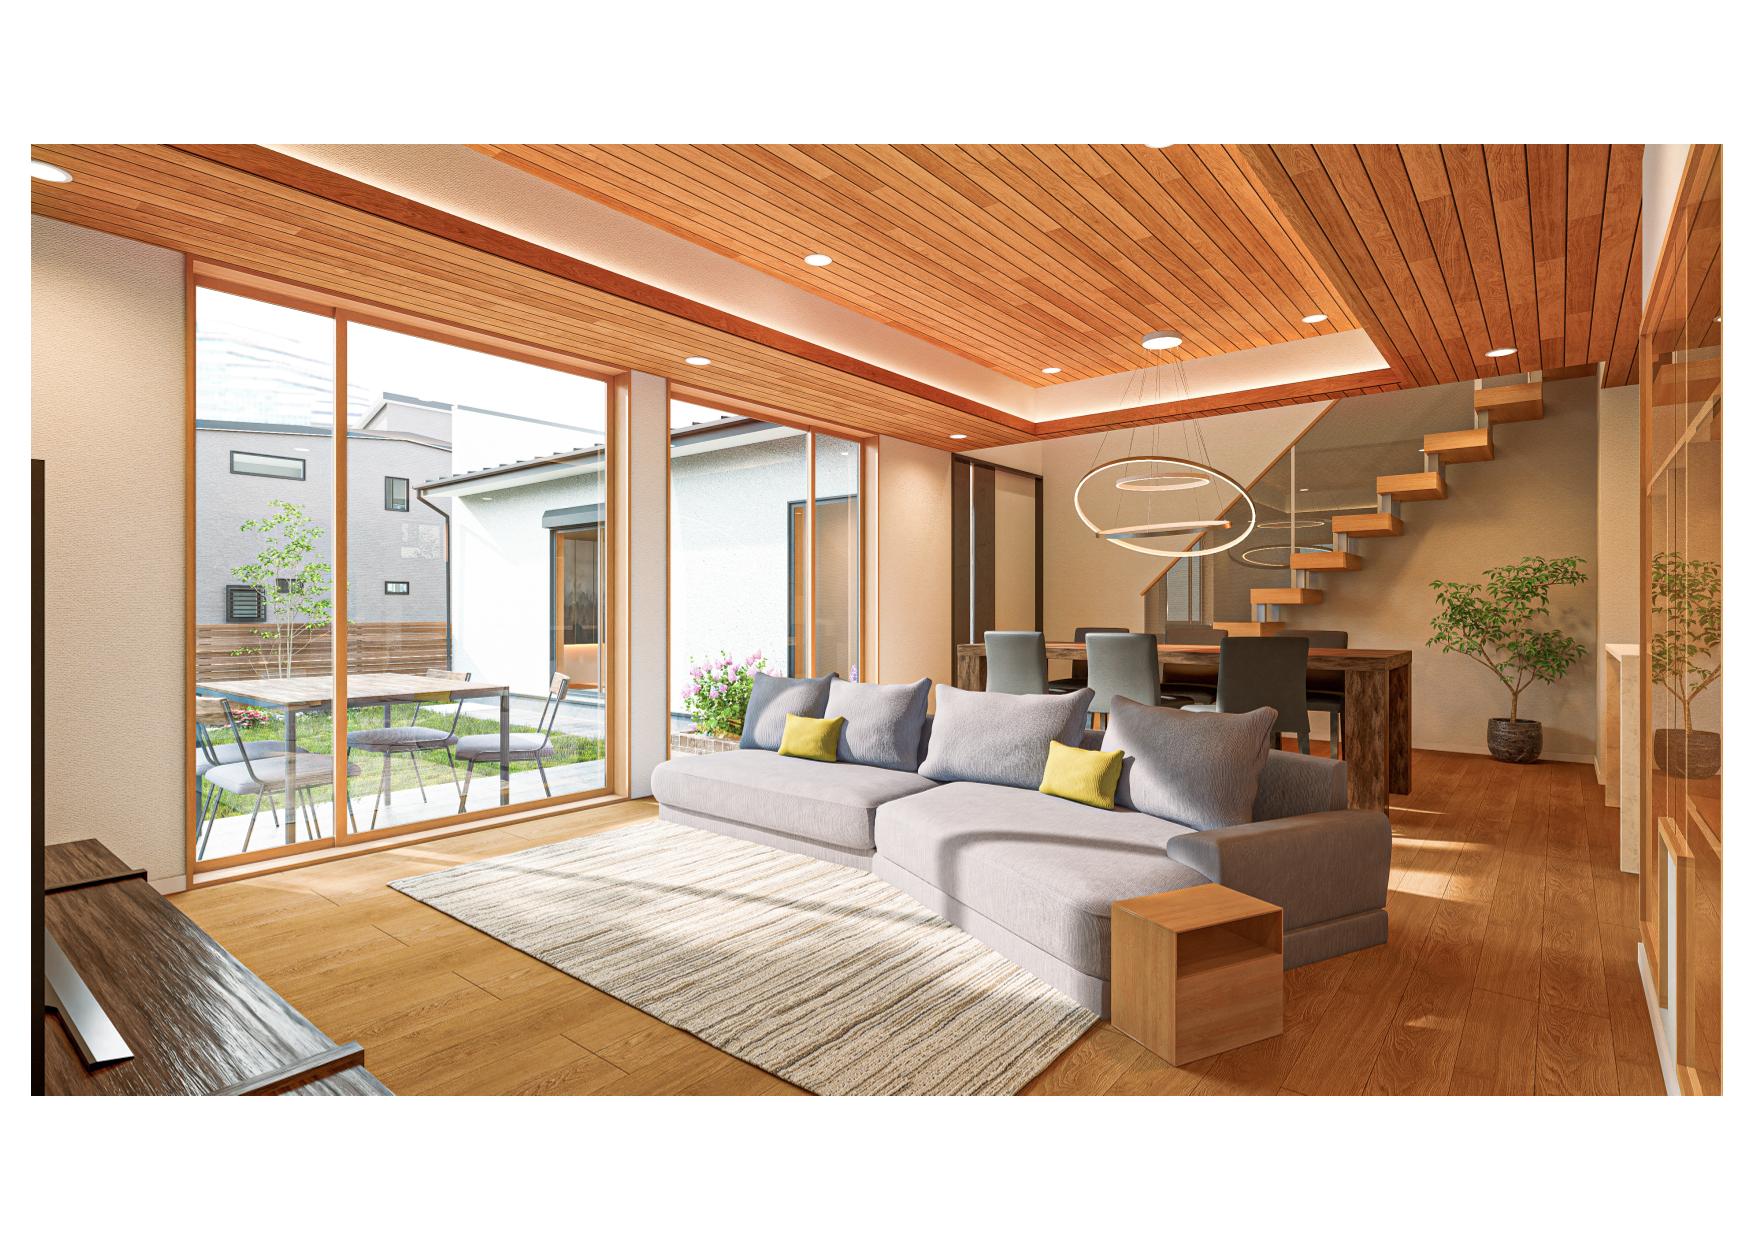 木のぬくもりと、現代住宅に求められる簡素さが融合された空間提案